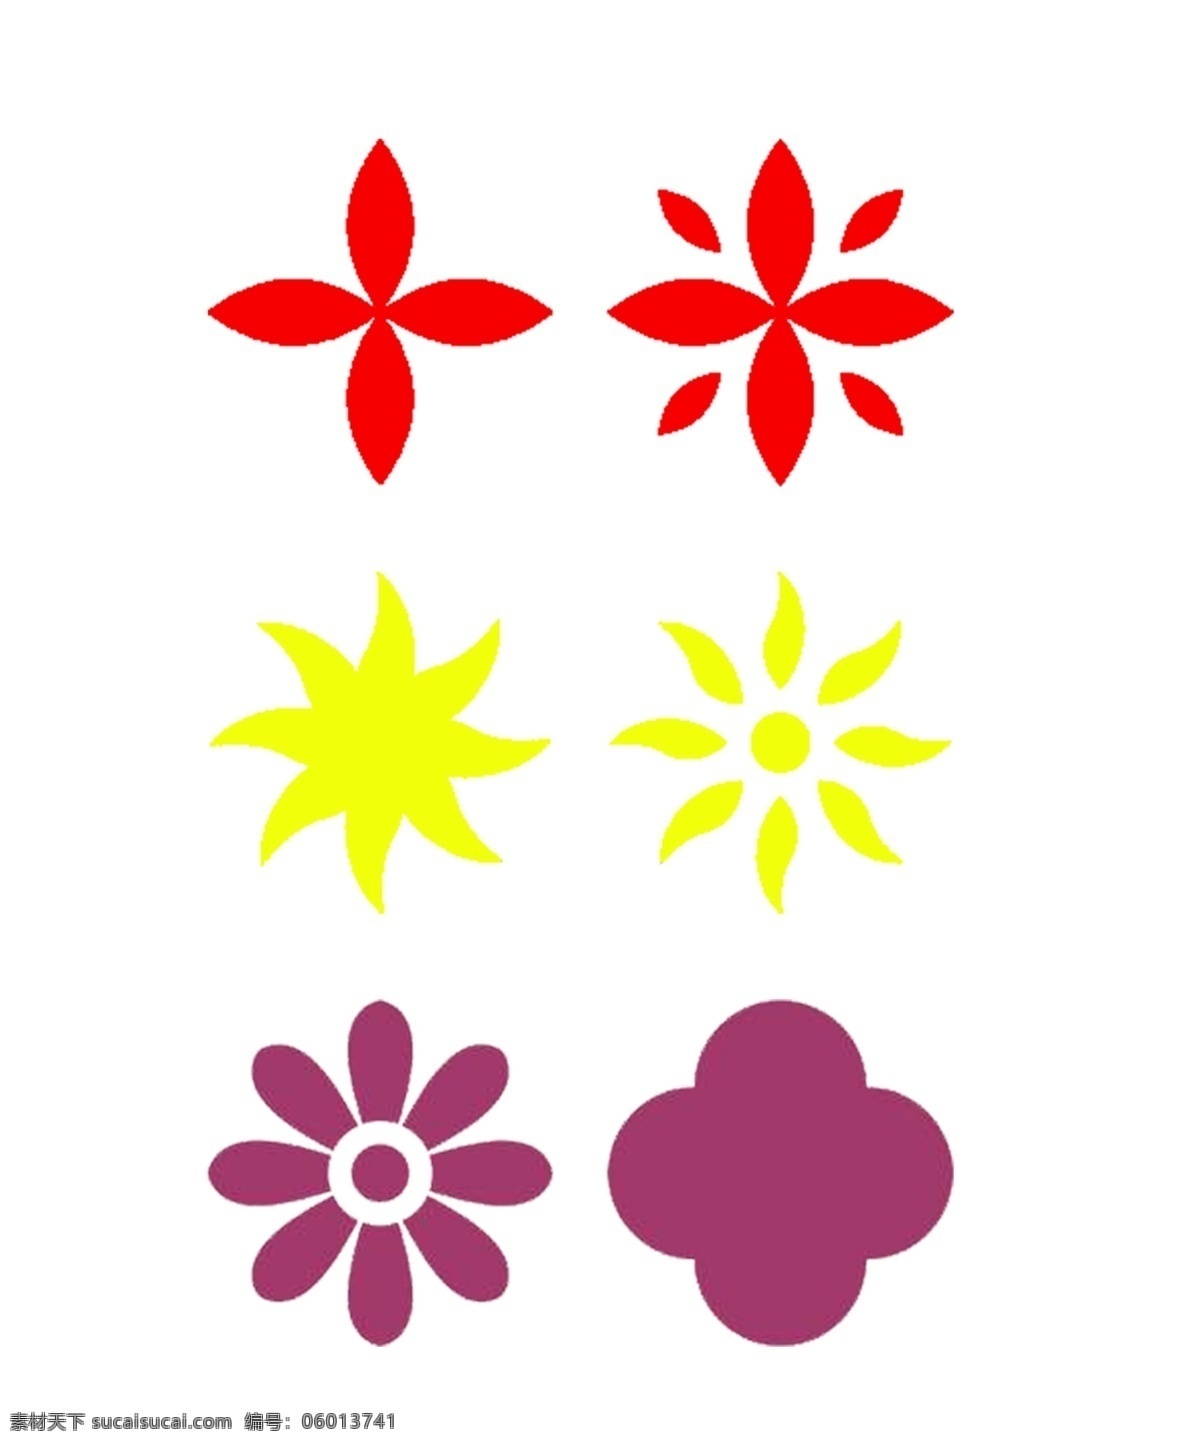 花朵 彩色 图标素材 图标 四叶 五叶 简单 免抠 可用于装饰 可分开使用 红色 黄色 紫色 好看